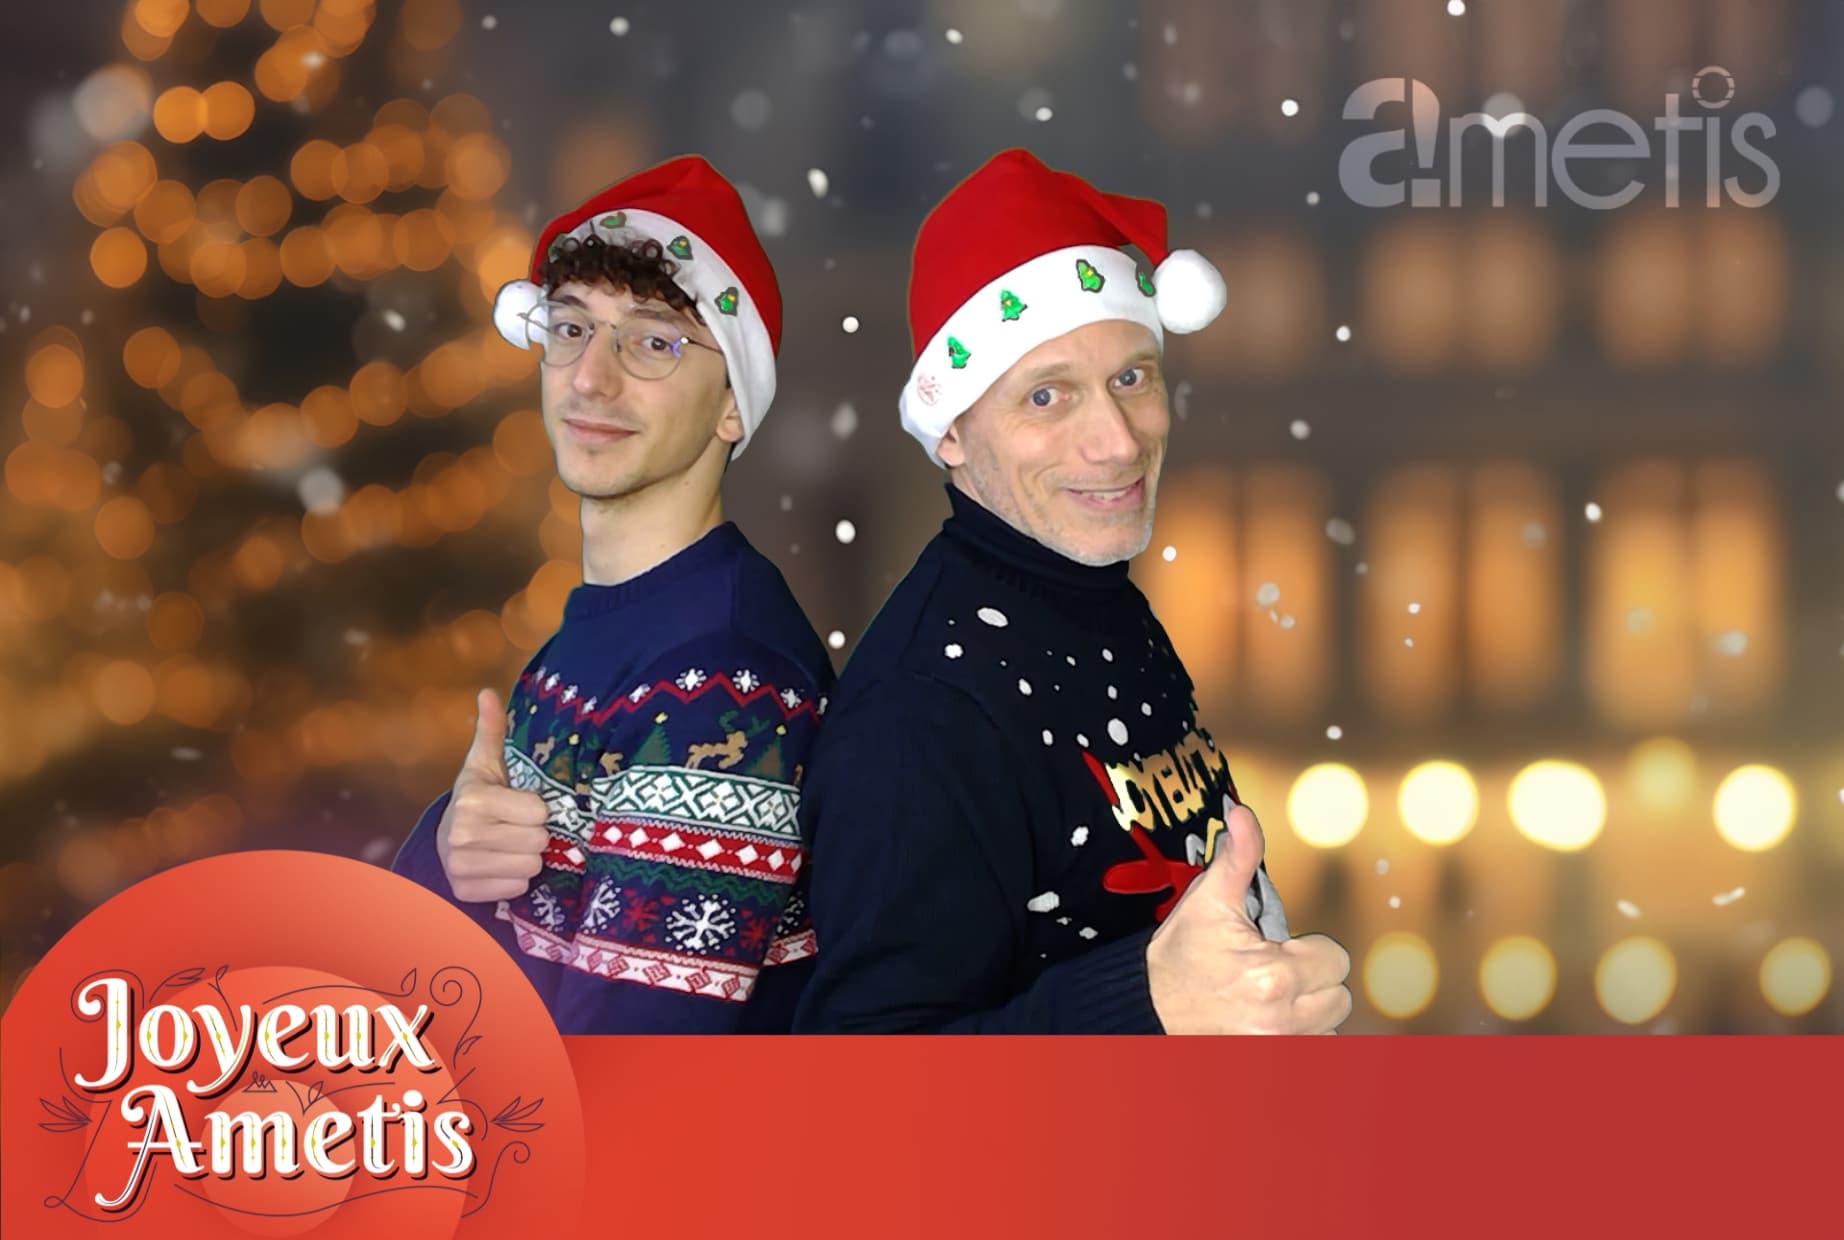 Noël à Amiens devant un photobooth. Joyeux Ametis !